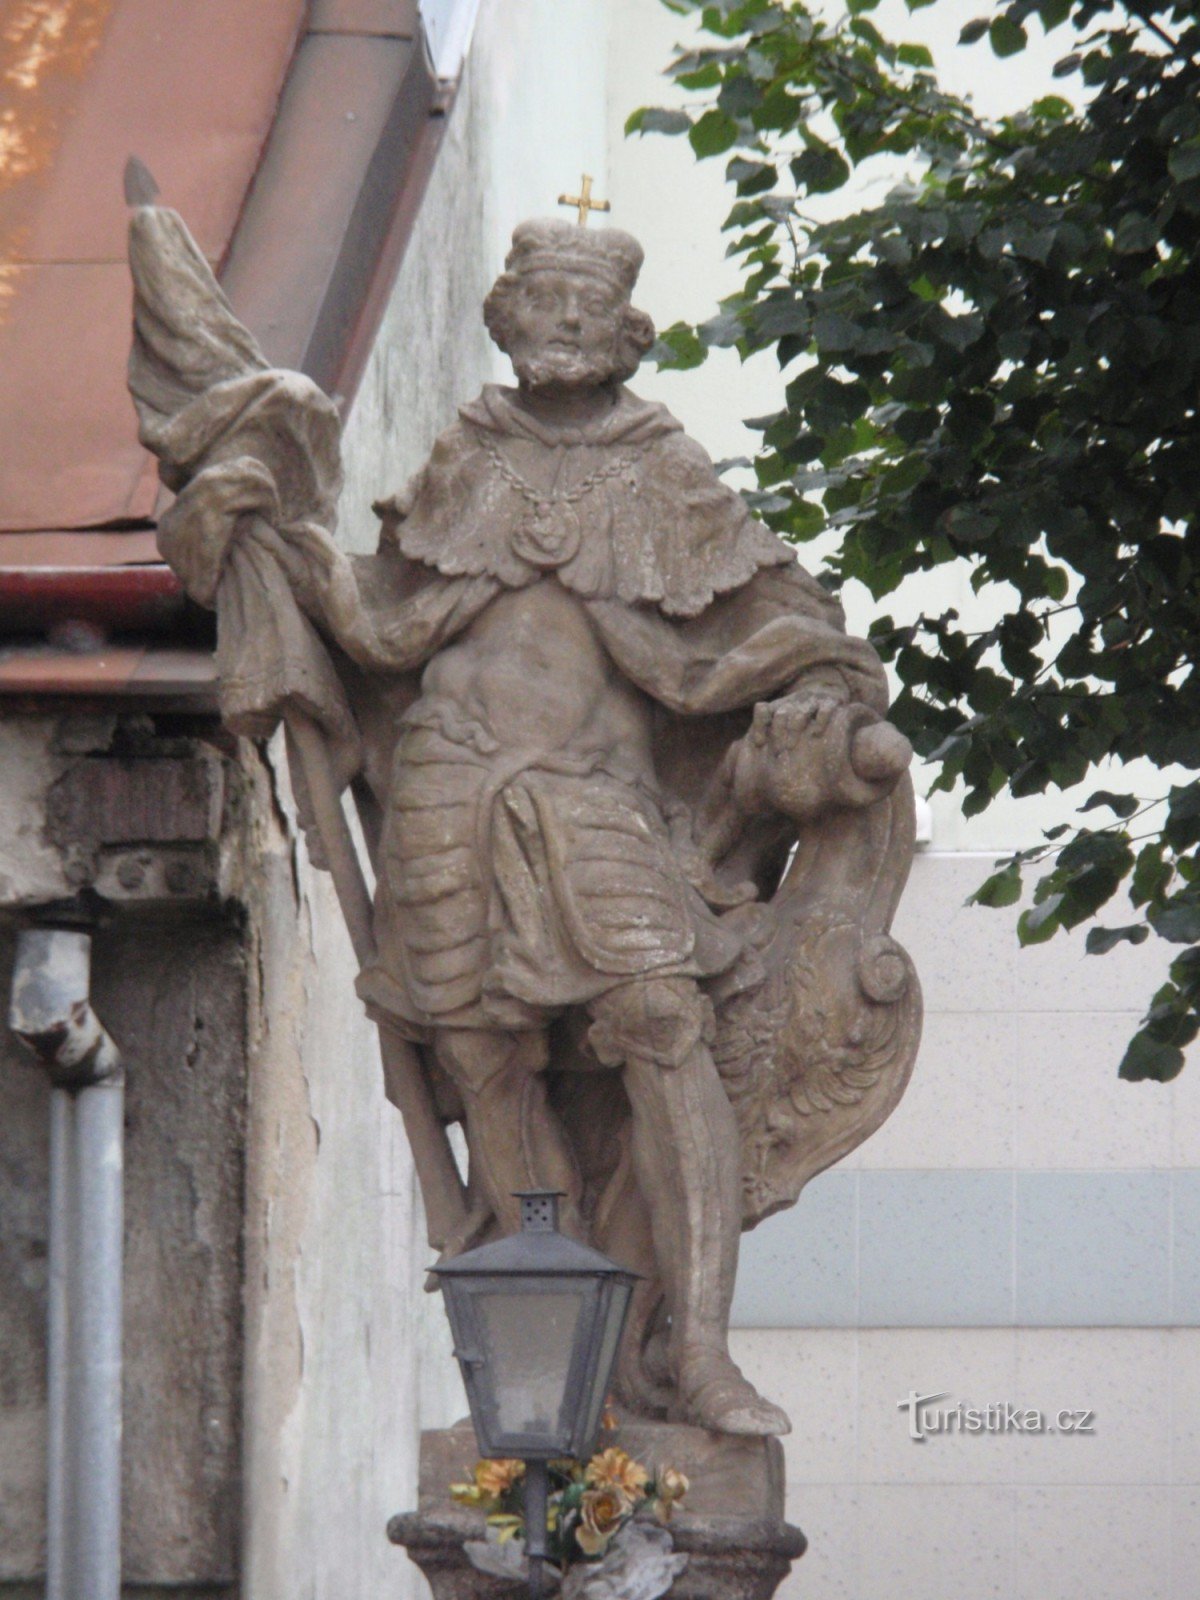 Velké Meziříčí - baročne skulpture v ulici Hornoměstská